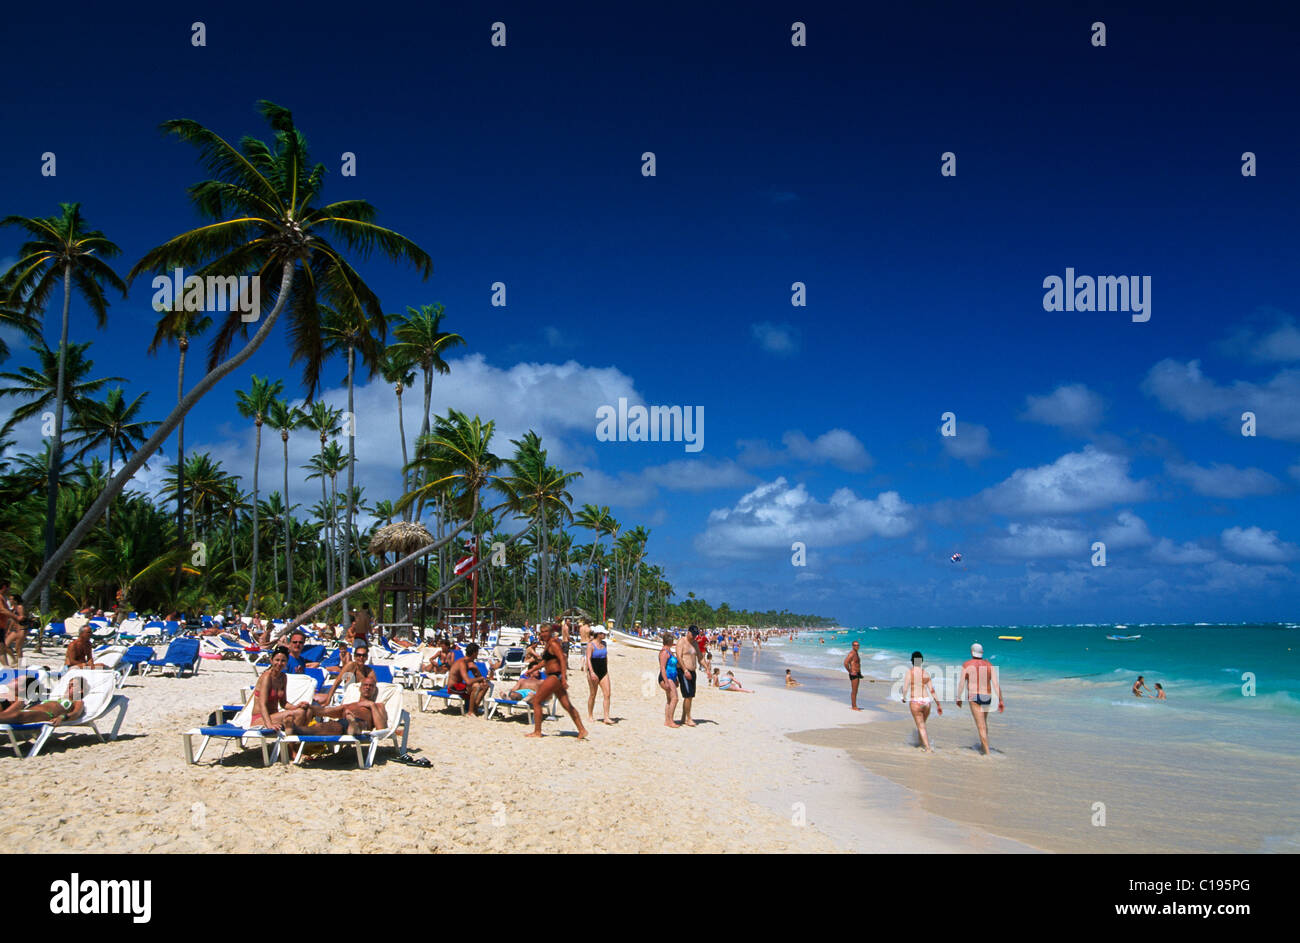 Cerca de playa Bávaro en Punta Cana, República Dominicana, El Caribe Foto de stock